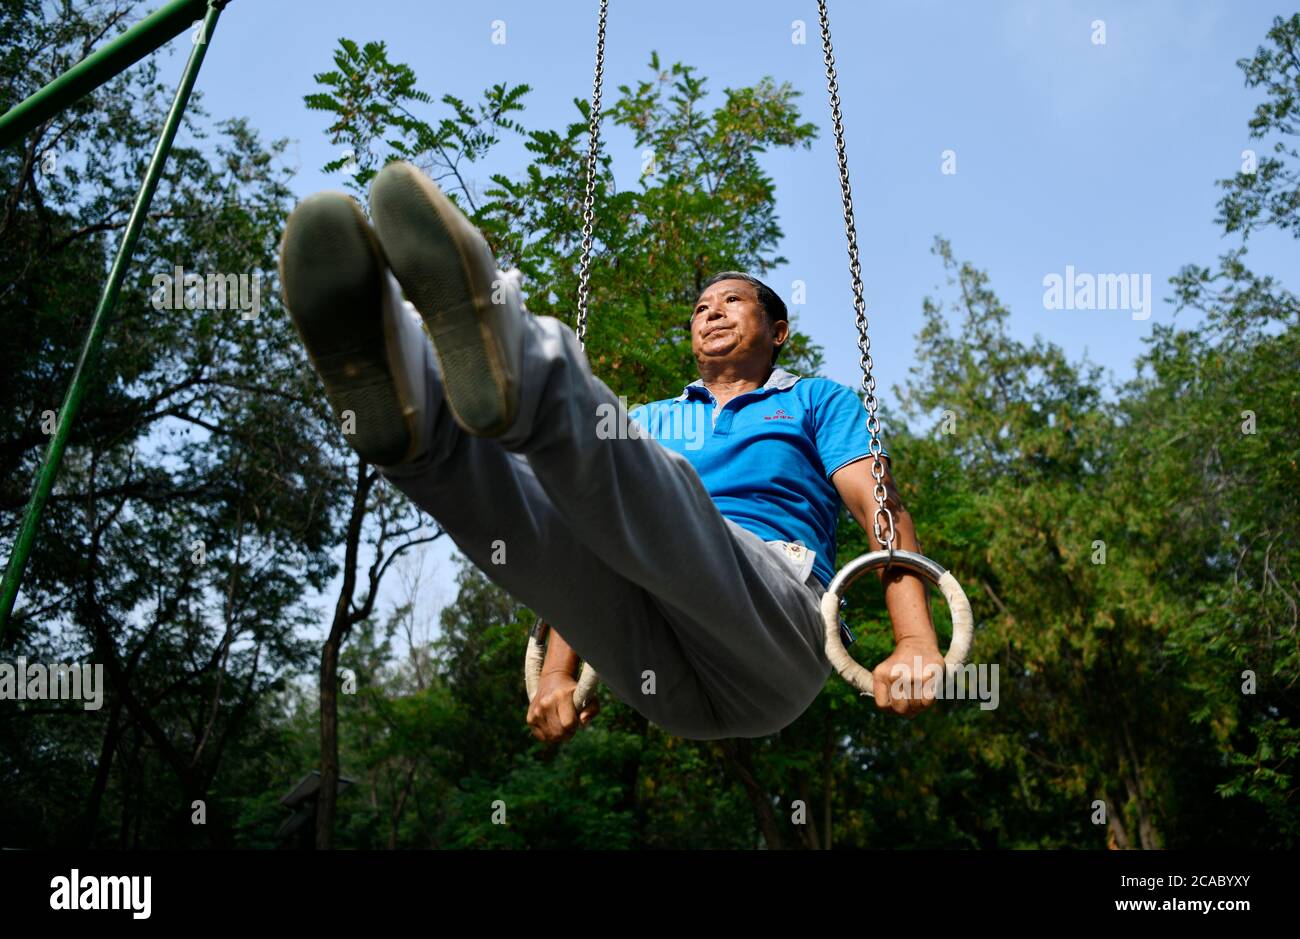 (200806) -- TIANJIN, 6 août 2020 (Xinhua) -- du Qiuwang, 69 ans, pratique la gymnastique au parc Xigu, dans le nord de la Chine, Tianjin, 4 août 2020. Un groupe de personnes âgées a formé une équipe de gymnastique à Tianjin il y a dix ans. Ils ont pratiqué régulièrement comme exercice physique quotidien. L'équipe compte maintenant plus de 20 membres, avec une moyenne d'âge de 68 ans. « l'exercice nous permet de maintenir un bon état physique, ce qui est très utile pour améliorer la qualité de vie. » a déclaré Tong Yugen, le chef d'équipe âgé de 66 ans. Au fur et à mesure que l'équipe devient plus connue, plus de 100 amateurs de fitness les ont rejoints dans l'exercice quotidien. Banque D'Images